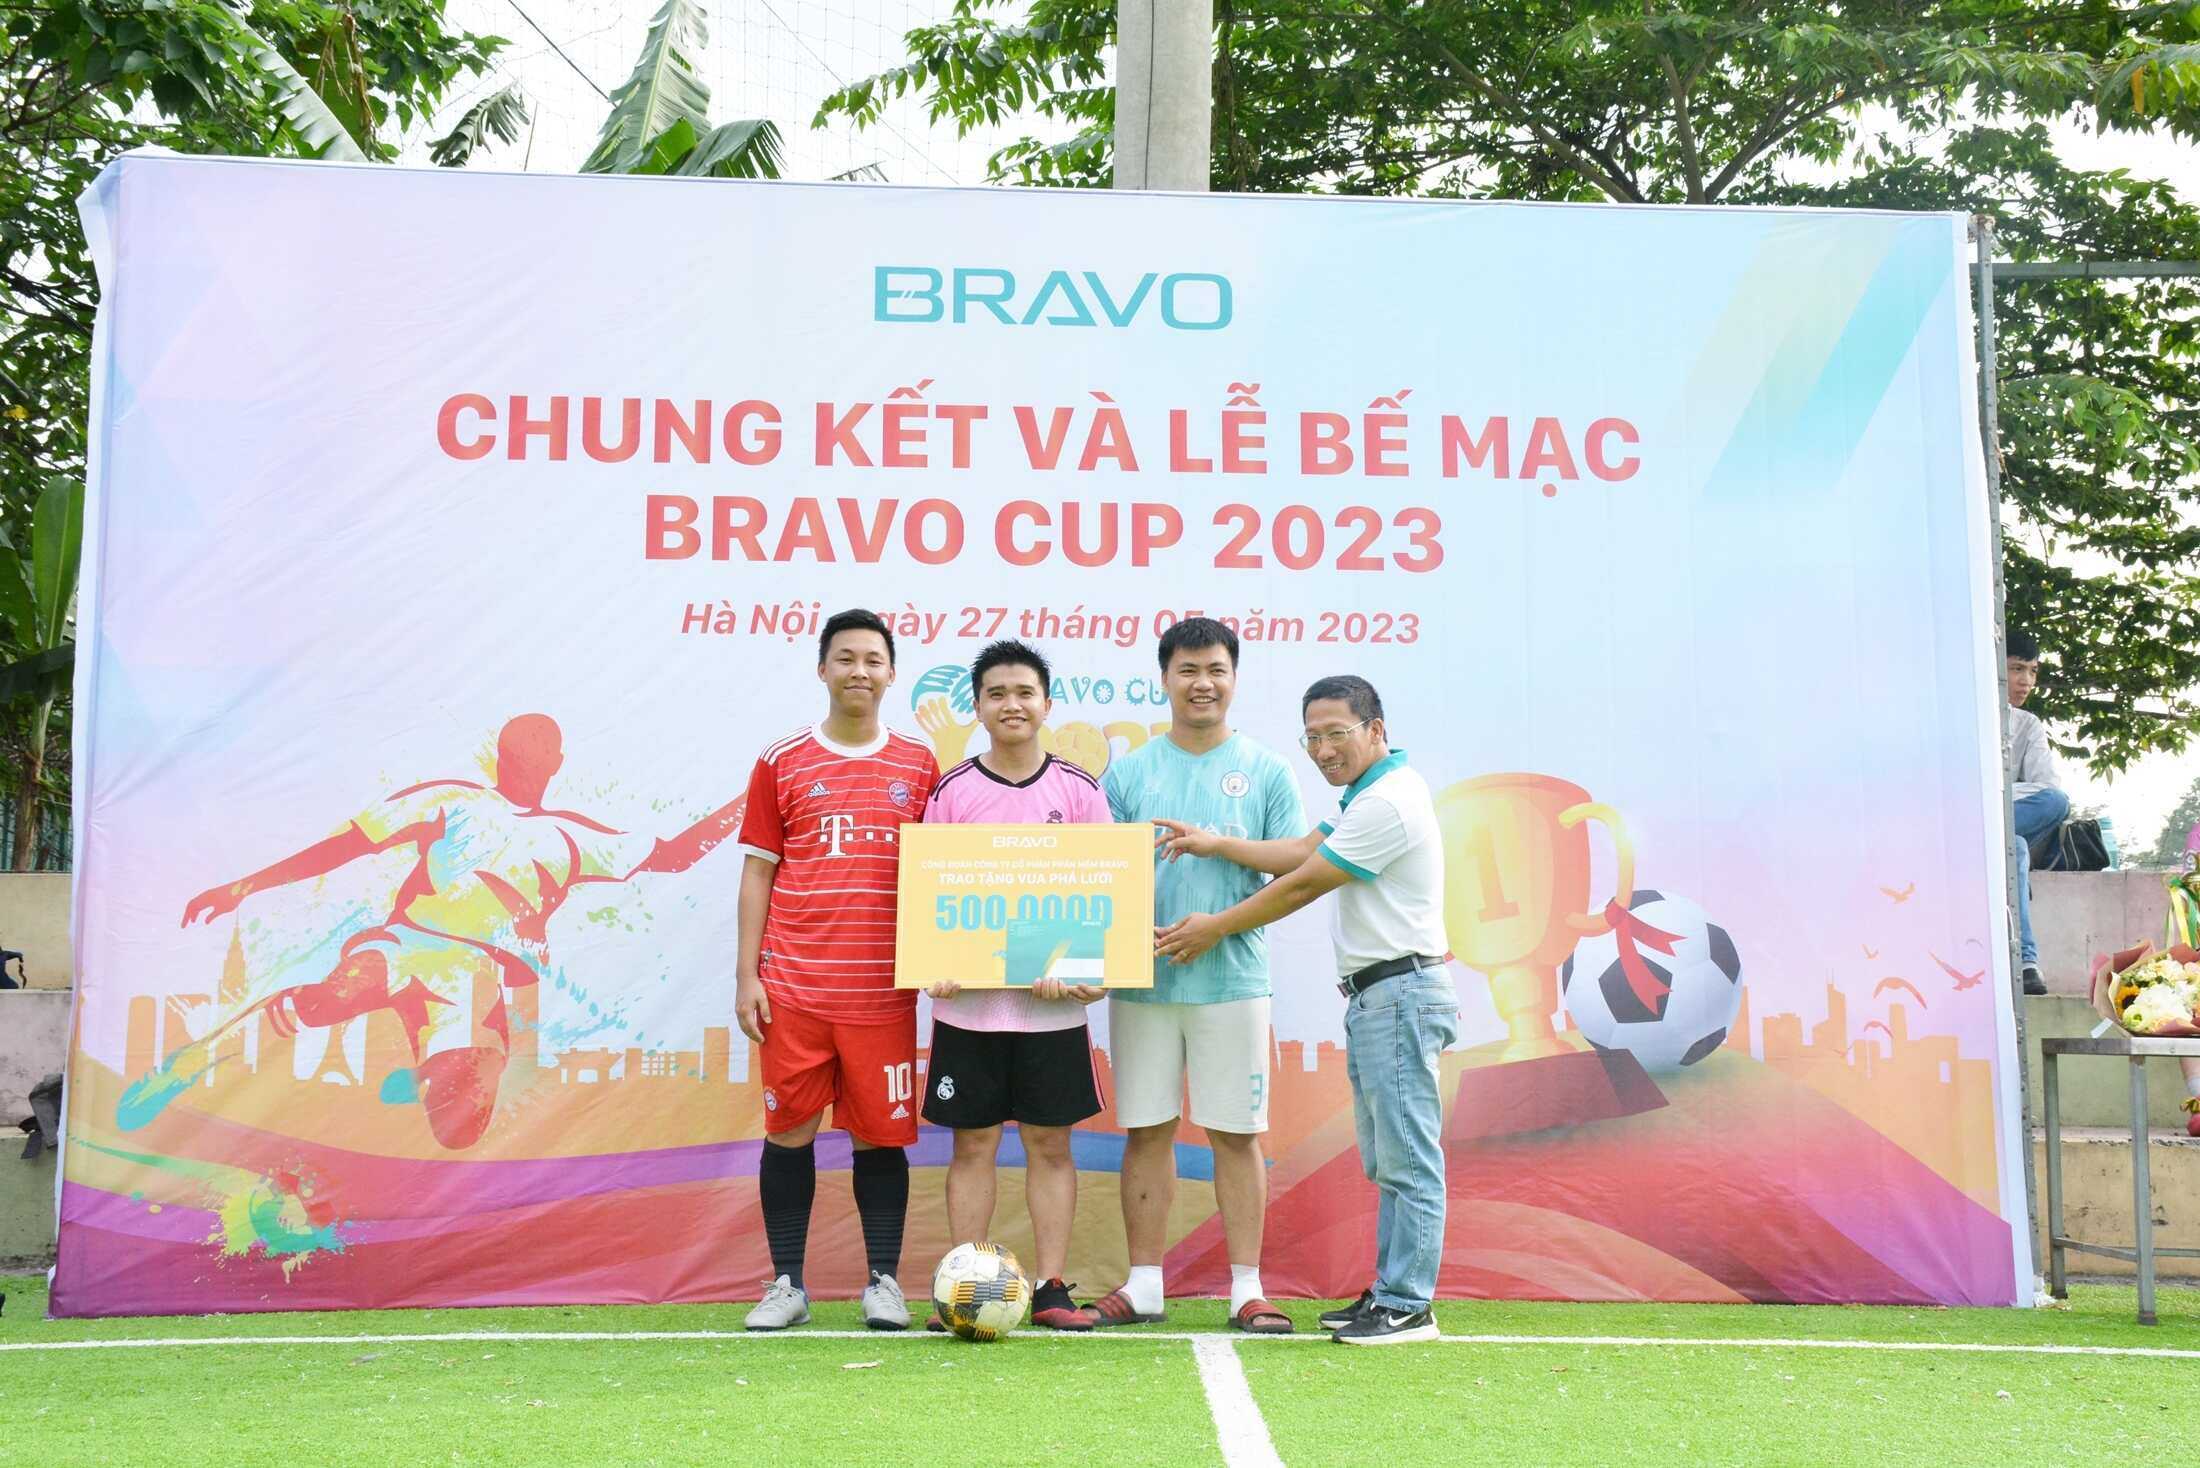 Vua phá lưới BRAVO Cup HN 2023